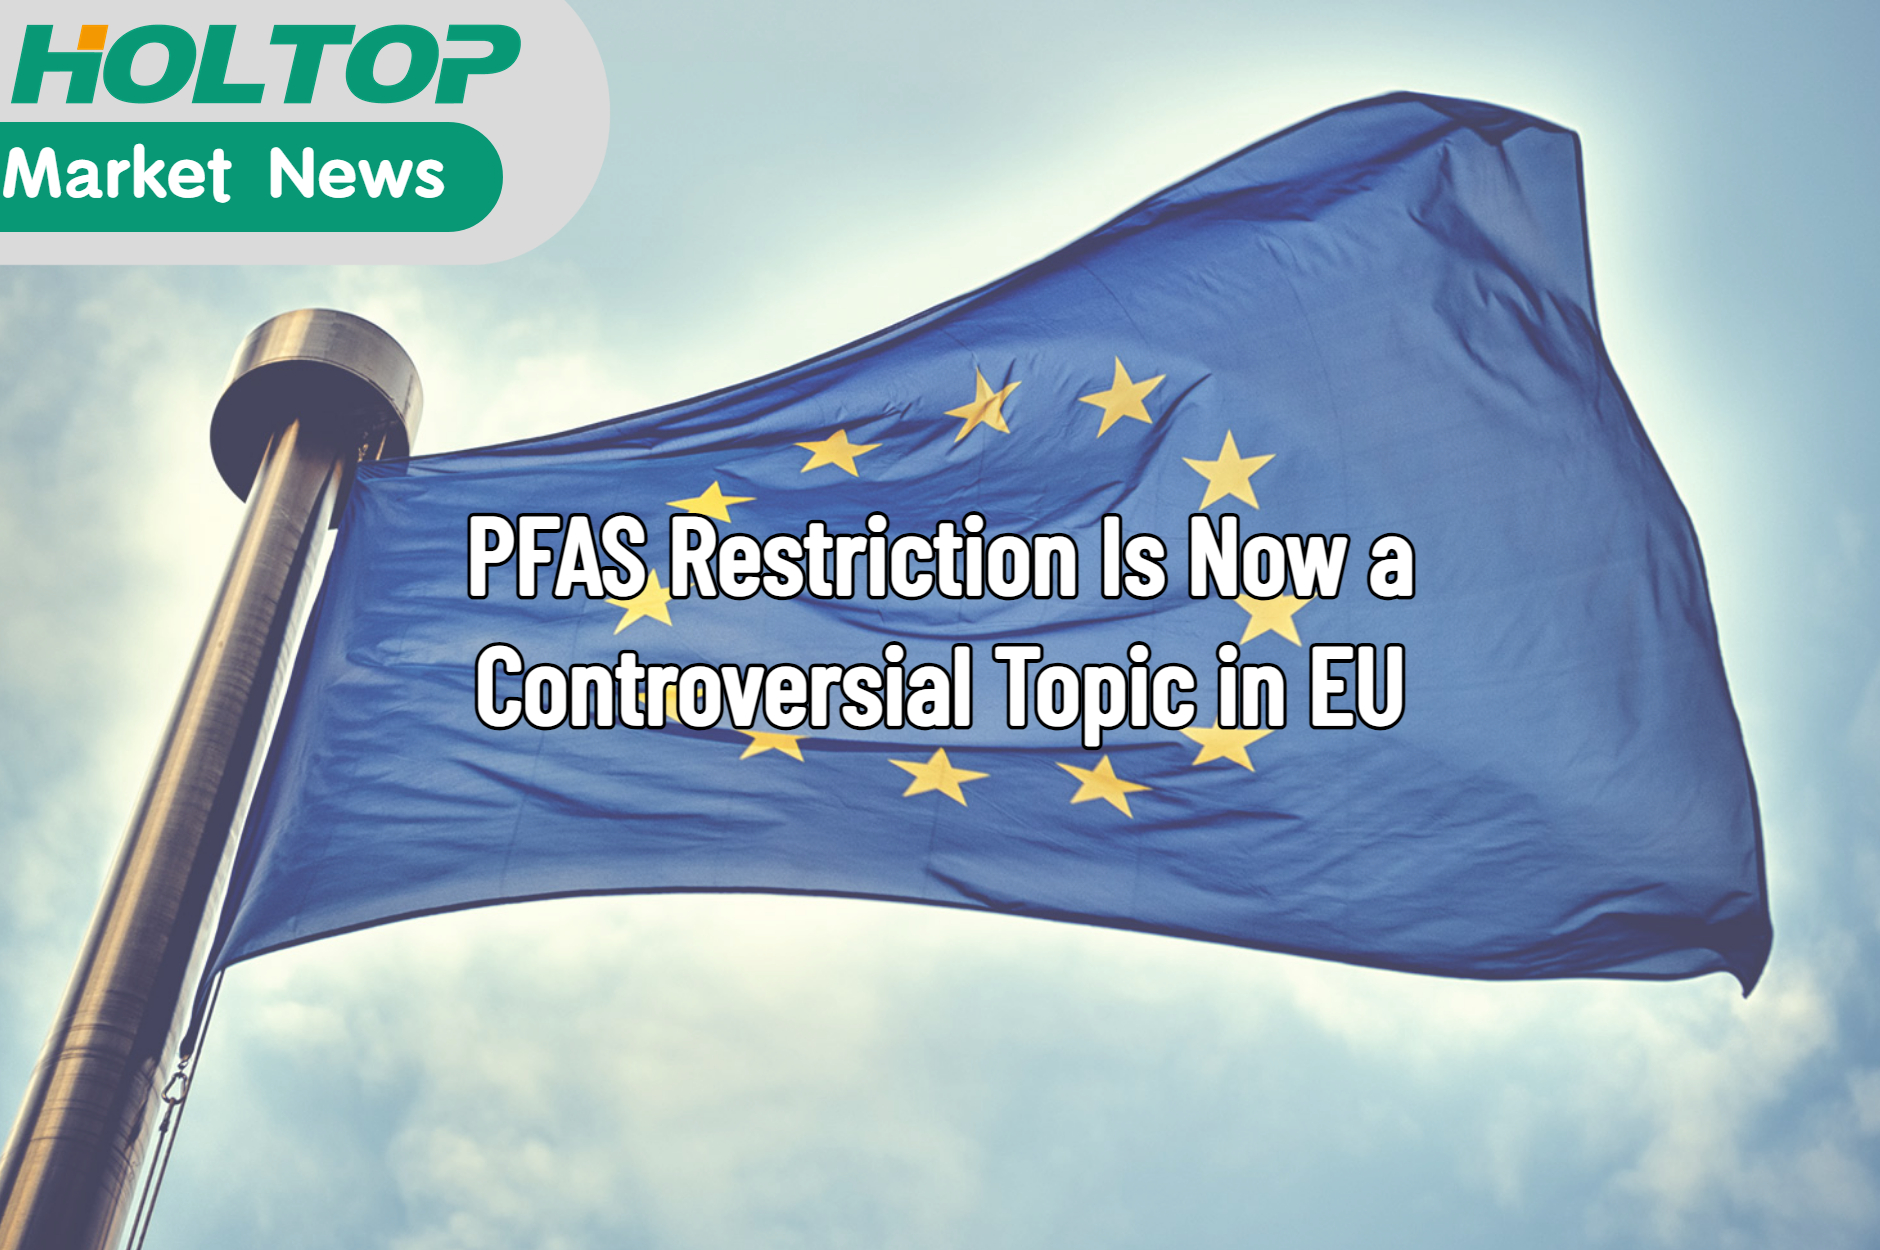 La restrizione PFAS è ora un argomento controverso nell'UE